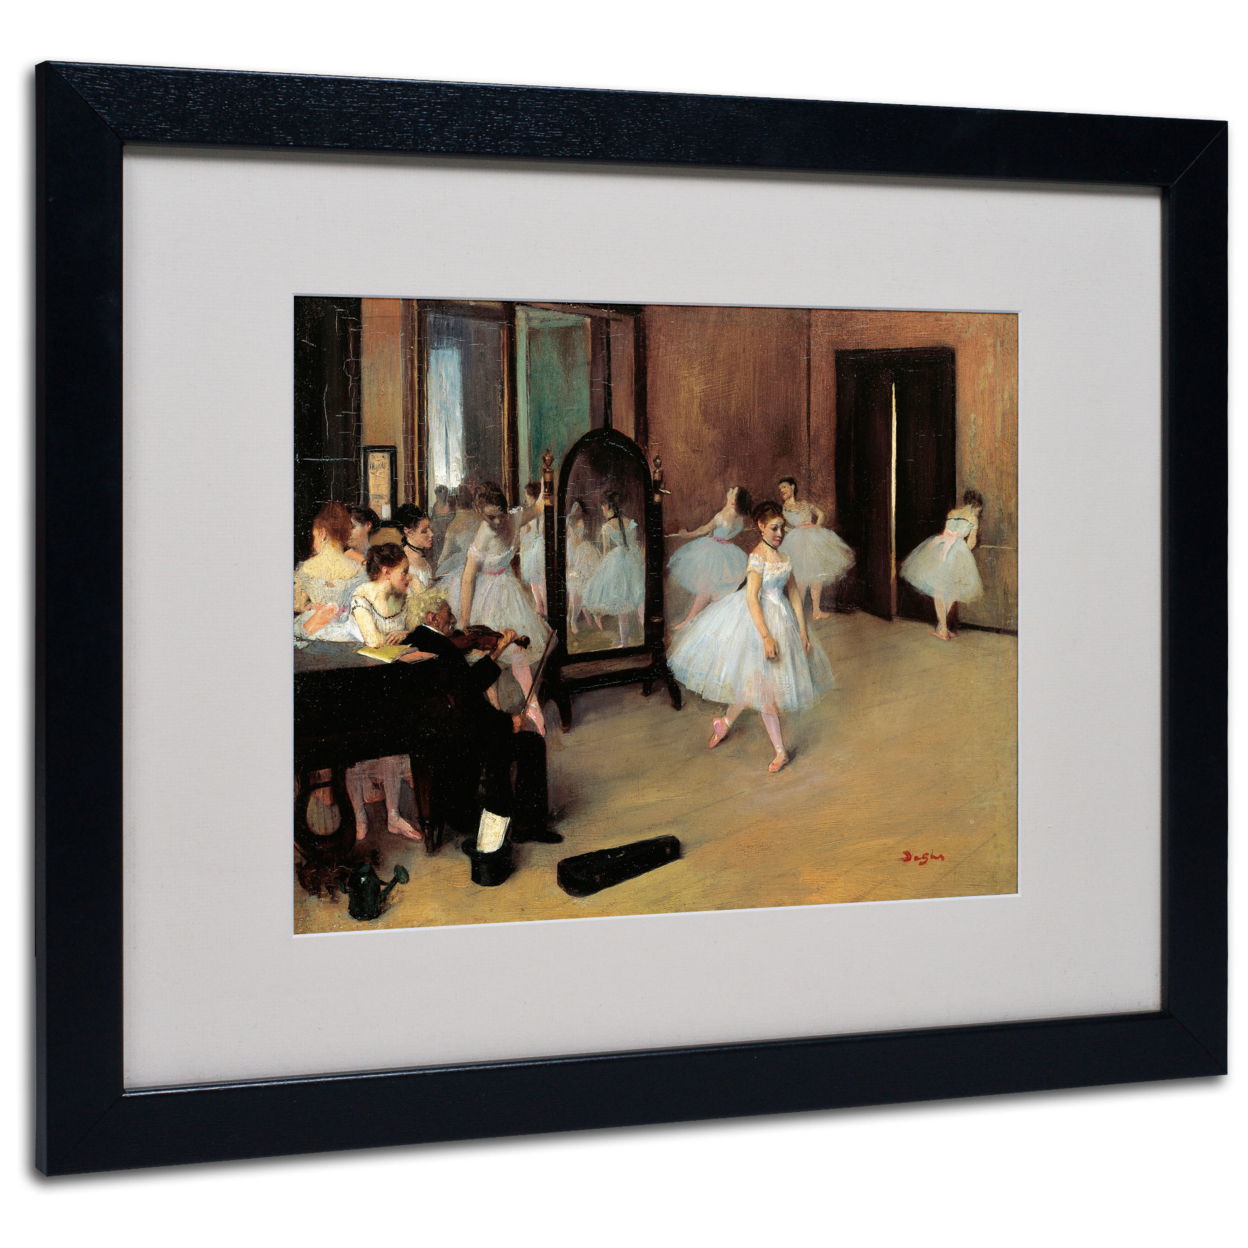 Edgar Degas 'The School Of Dance 1871' Black Wooden Framed Art 18 X 22 Inches